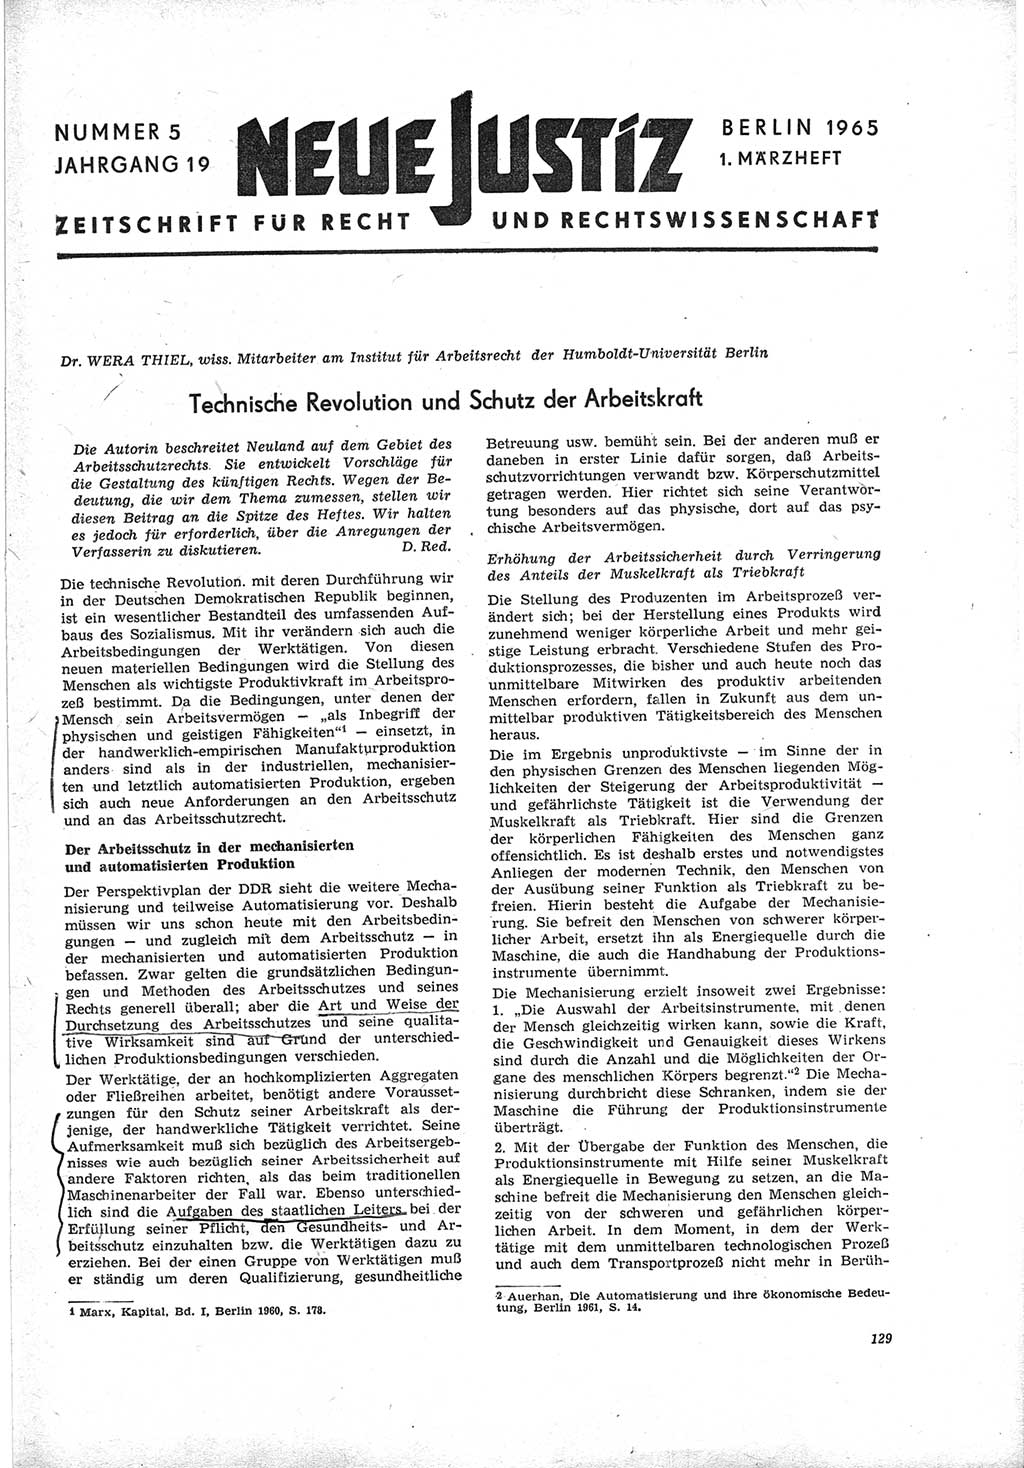 Neue Justiz (NJ), Zeitschrift für Recht und Rechtswissenschaft [Deutsche Demokratische Republik (DDR)], 19. Jahrgang 1965, Seite 129 (NJ DDR 1965, S. 129)